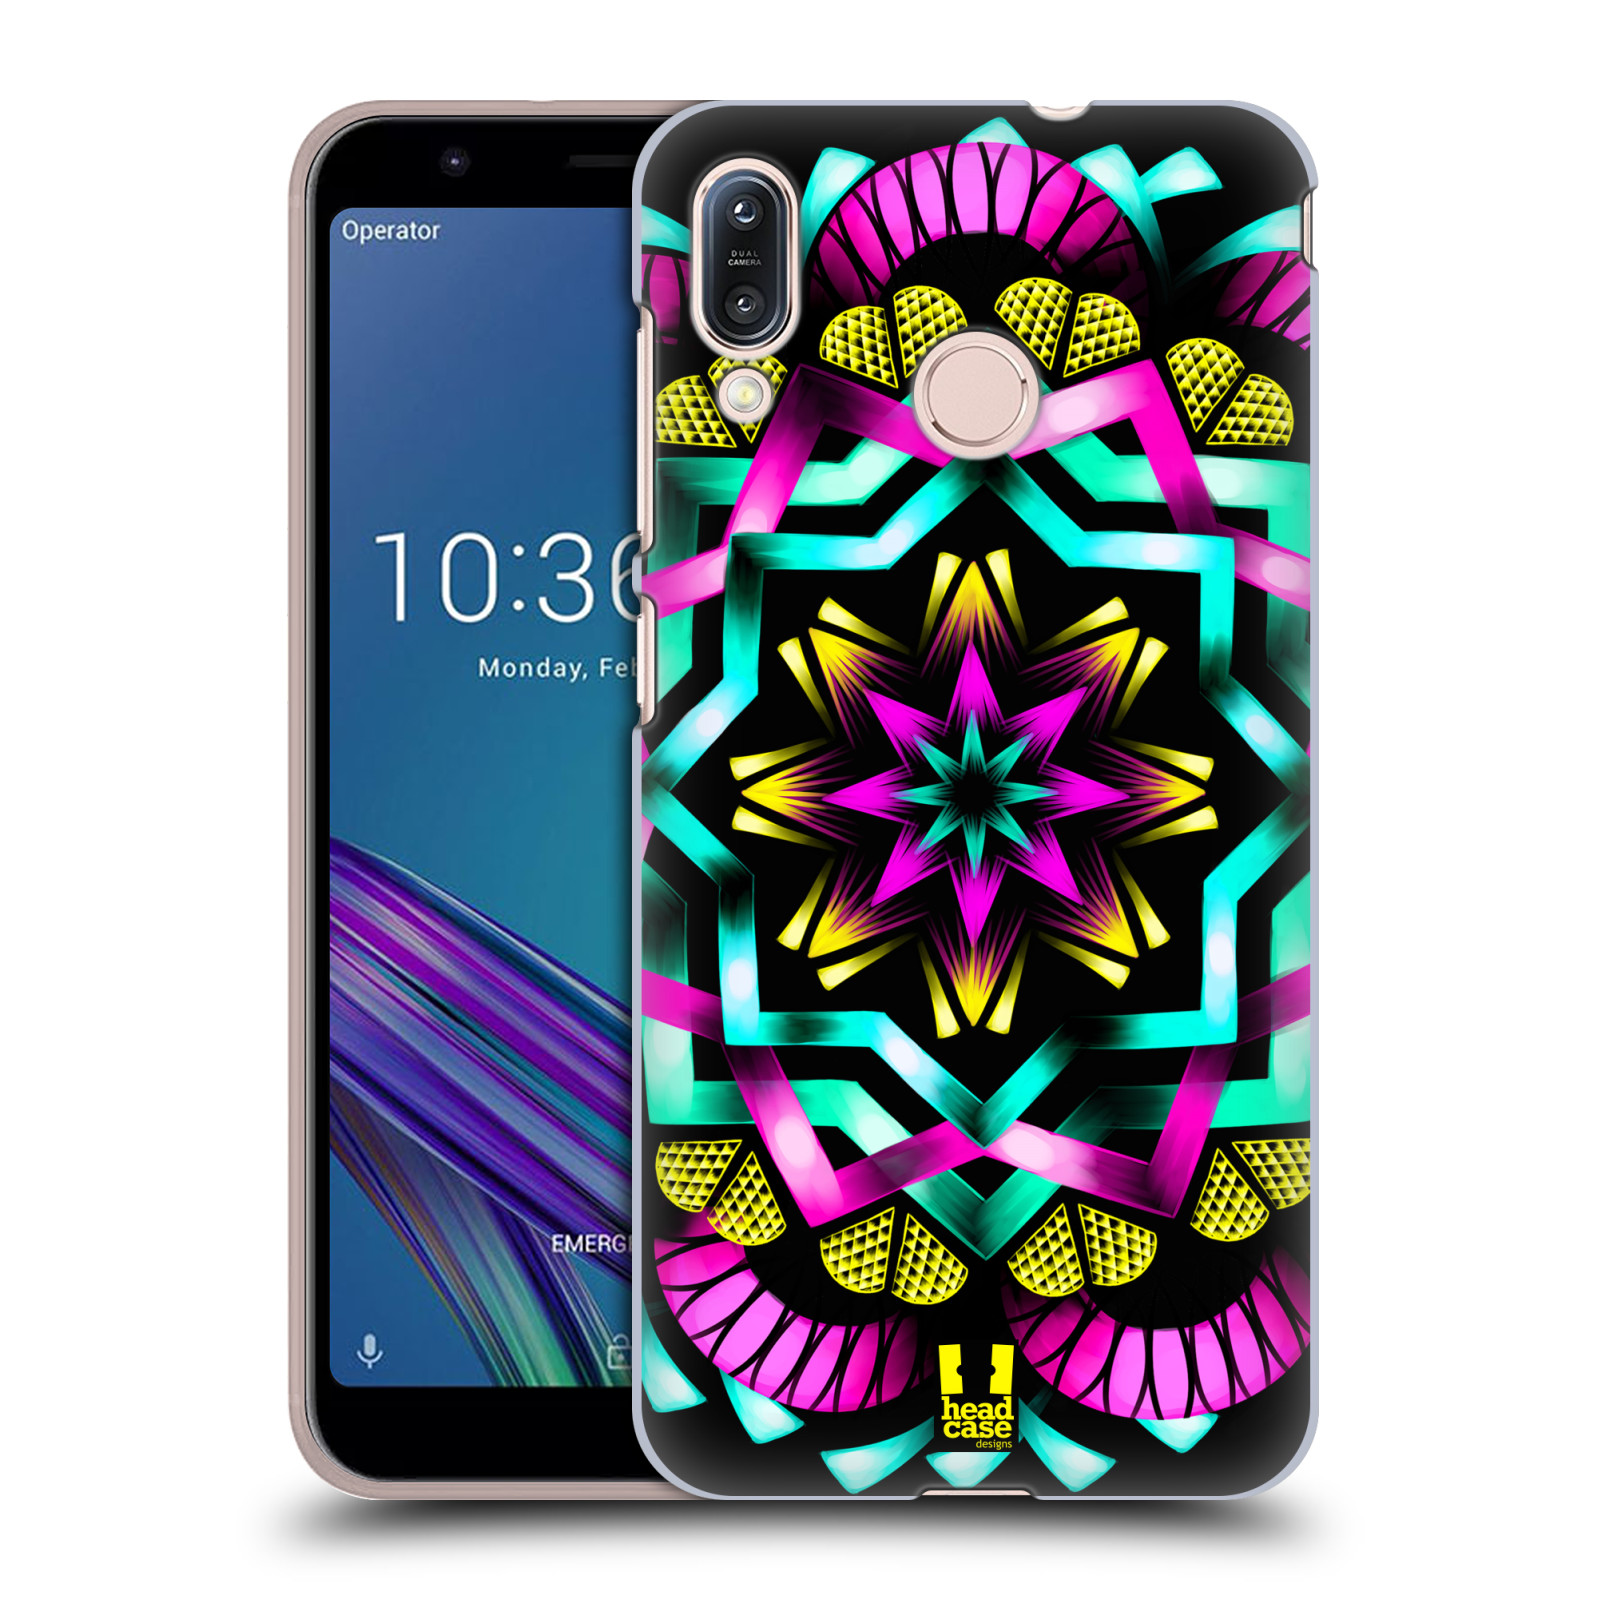 Pouzdro na mobil Asus Zenfone Max M1 (ZB555KL) - HEAD CASE - vzor Indie Mandala kaleidoskop barevný vzor SLUNCE